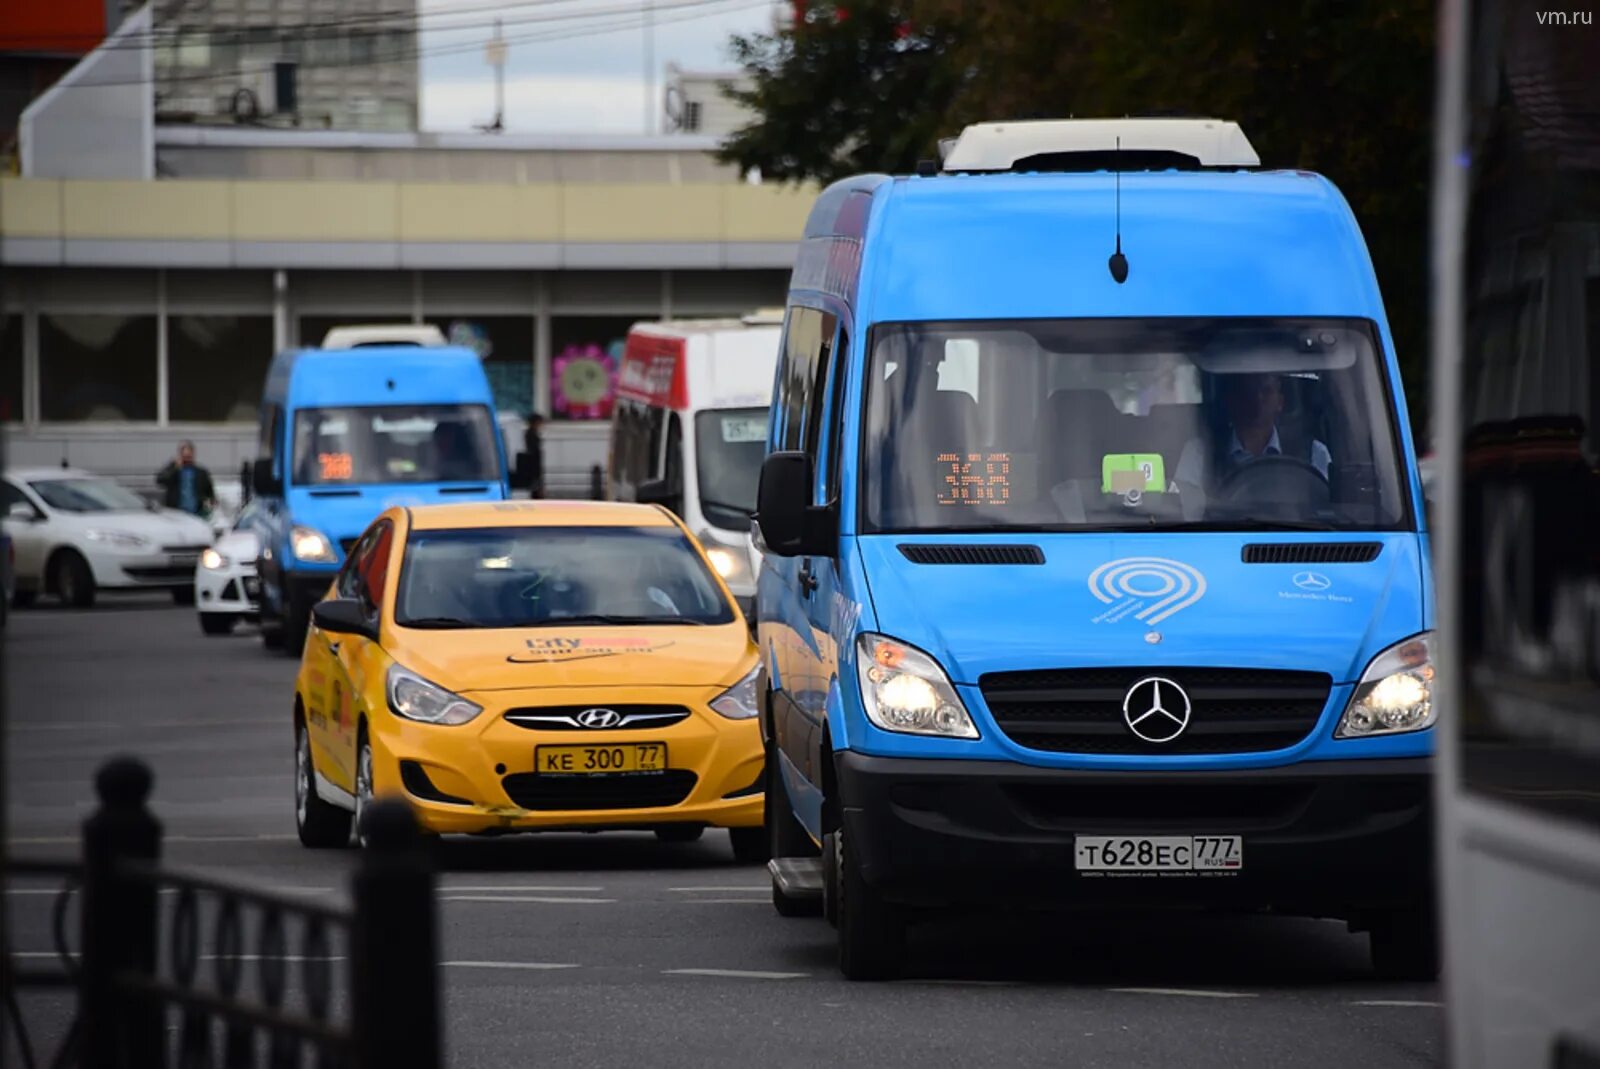 Маршрутные такси 45. Fiat Ducato автобус Мосгортранс. Общественный транспорт такси. Маршрутное такси в Москве. Автобус и автомобиль.